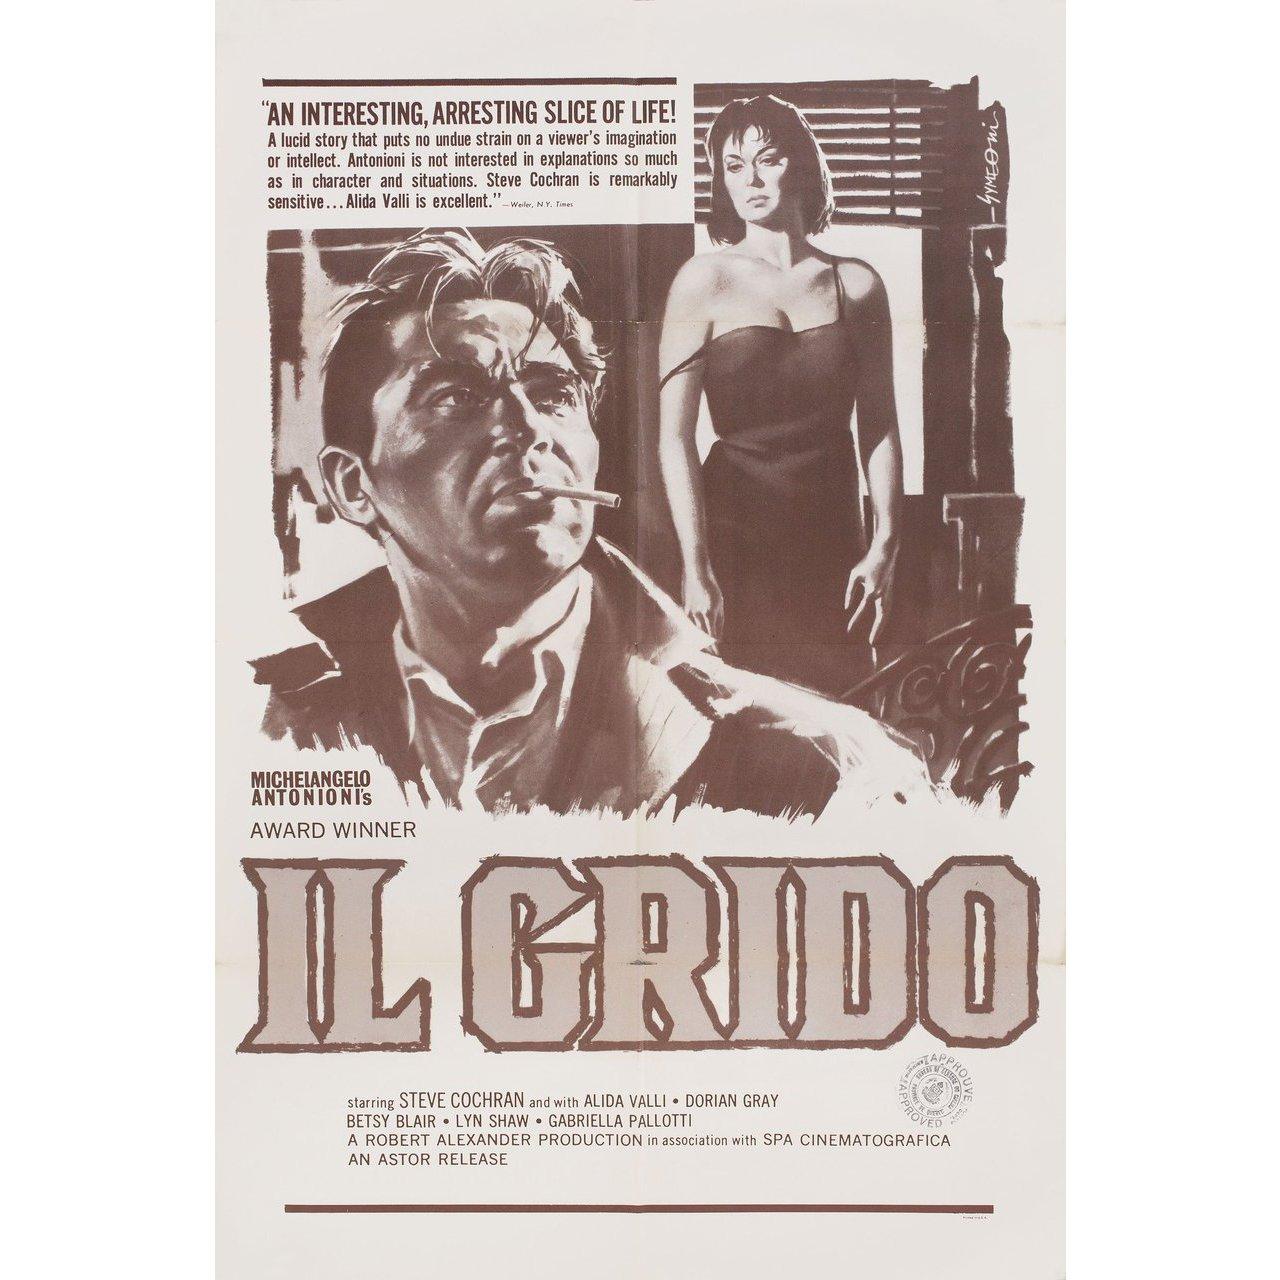 Originales US-Plakat von 1957 für den Film Il Grido (Der Schrei) von Michelangelo Antonioni mit Steve Cochran / Alida Valli / Betsy Blair / Gabriella Pallotta. Sehr guter Zustand, gefaltet mit Zensurstempel. Viele Originalplakate wurden gefaltet